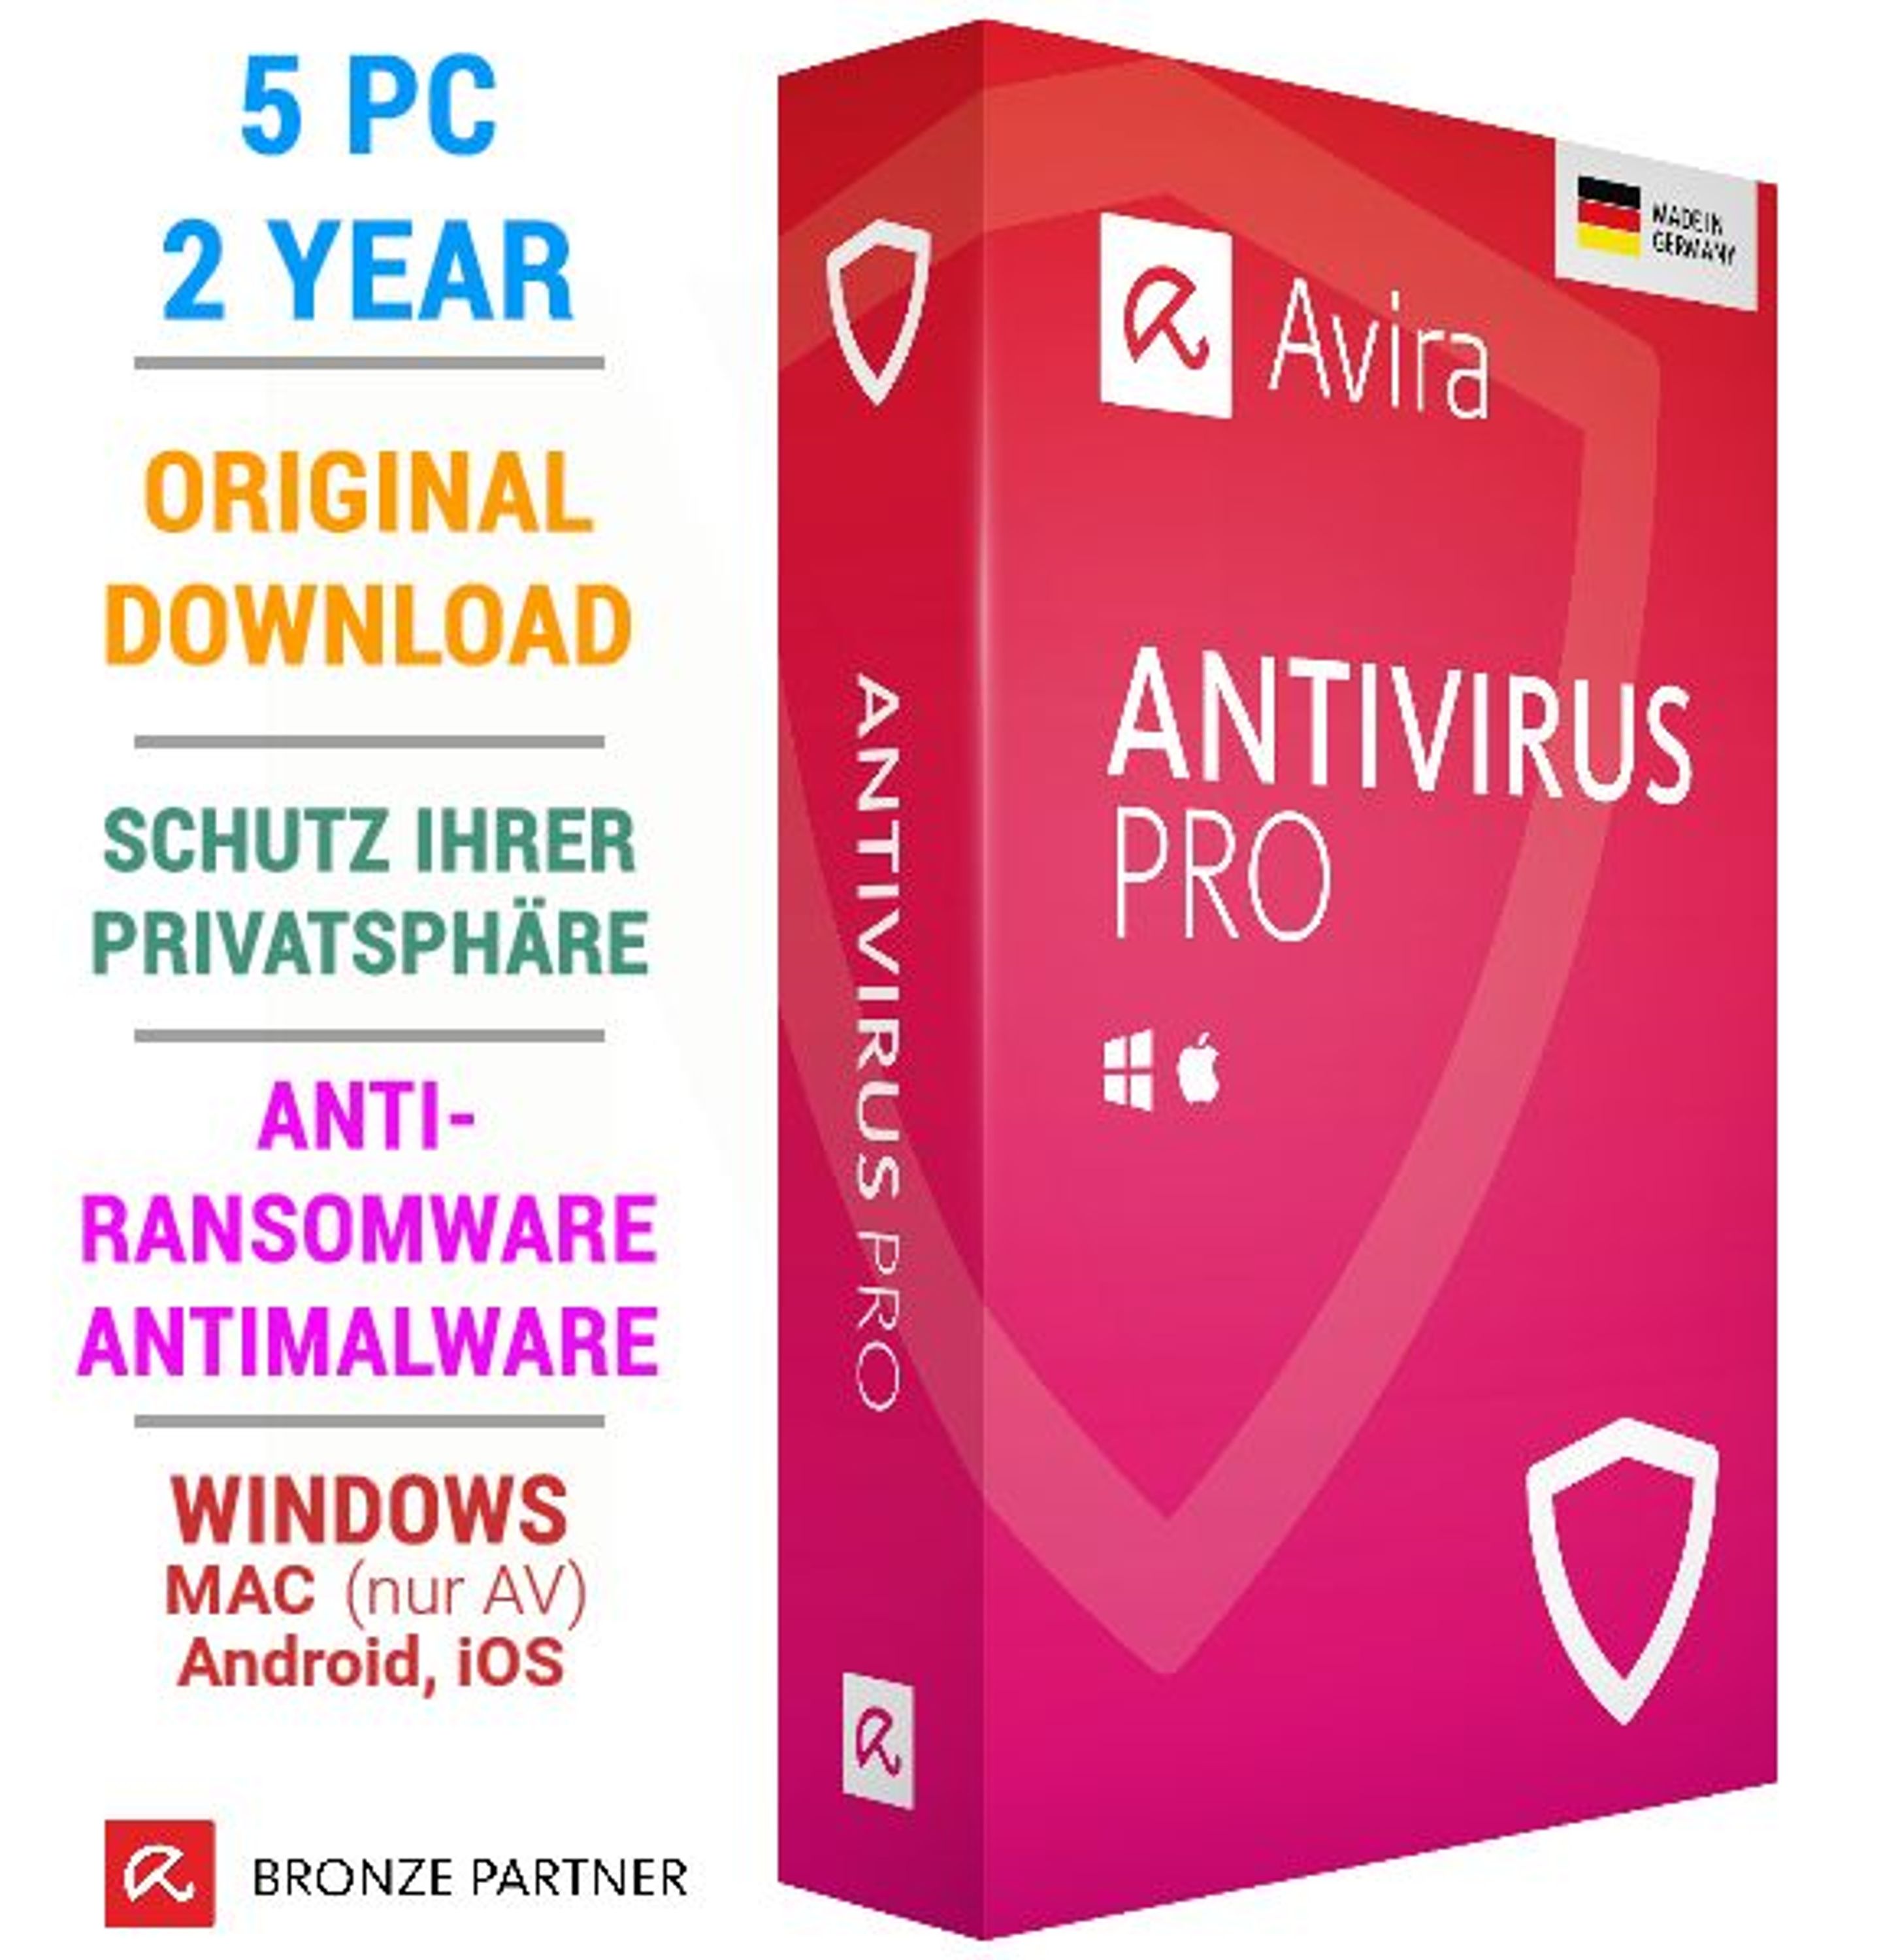 avira antivirus pro 2020 free download